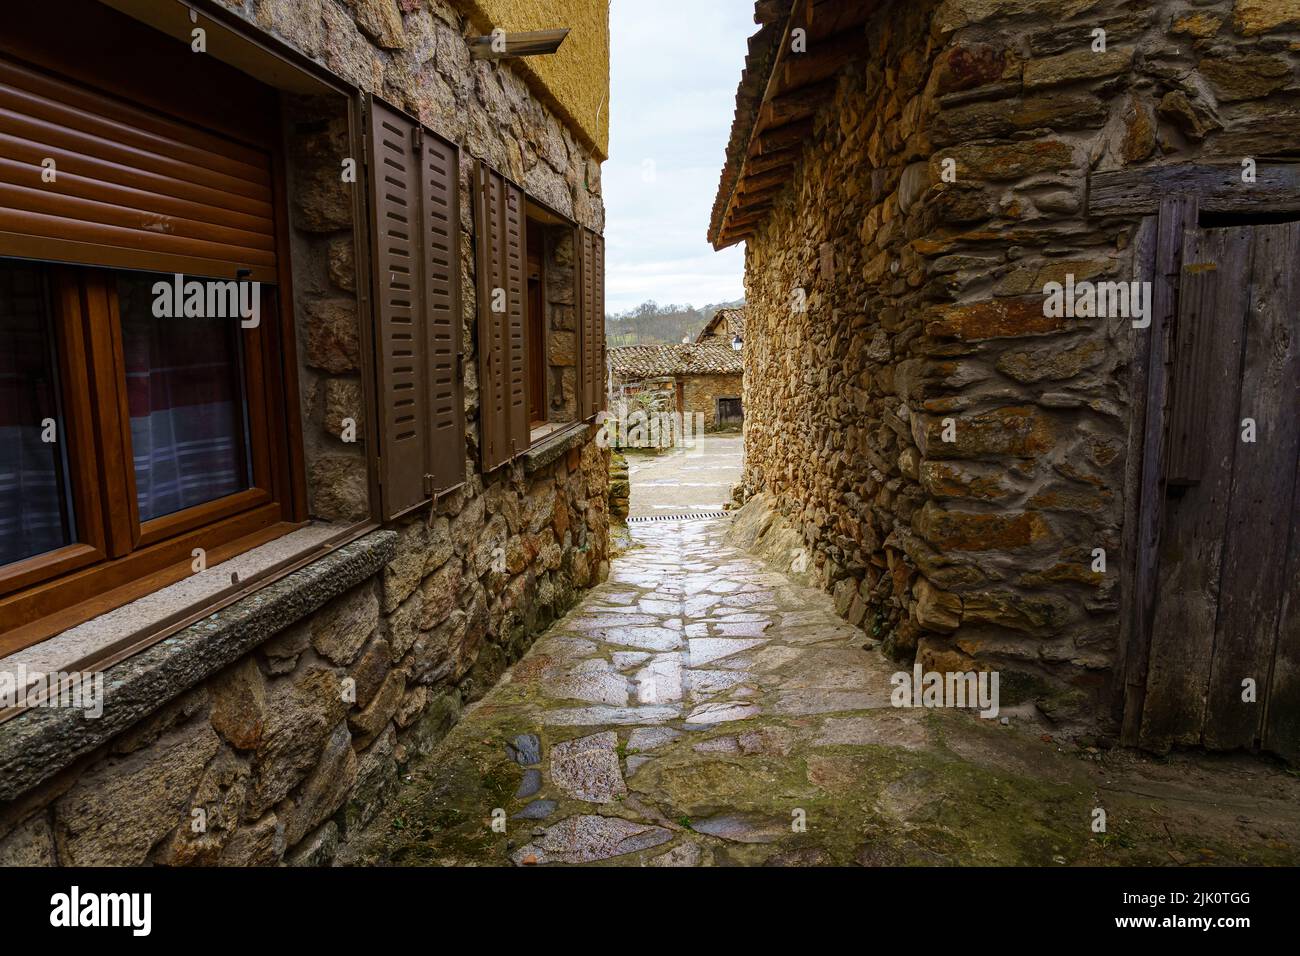 Vicolo stretto tra case in pietra con luce sullo sfondo e riflessi sul terreno bagnato dalla pioggia. Spagna. Foto Stock